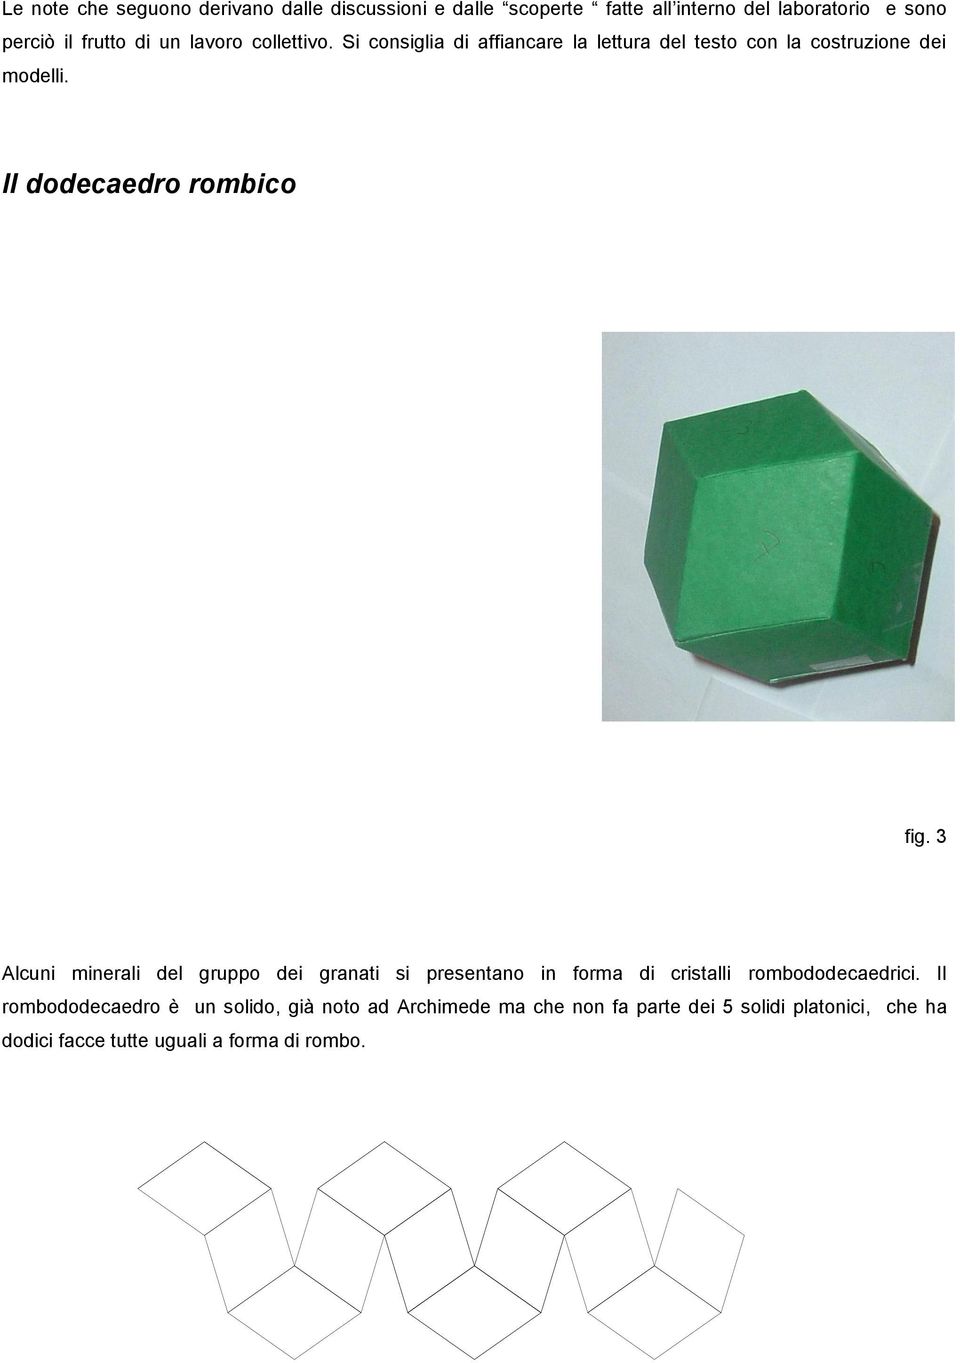 Il dodecaedro rombico fig. 3 lcuni minerali del gruppo dei granati si presentano in forma di cristalli rombododecaedrici.